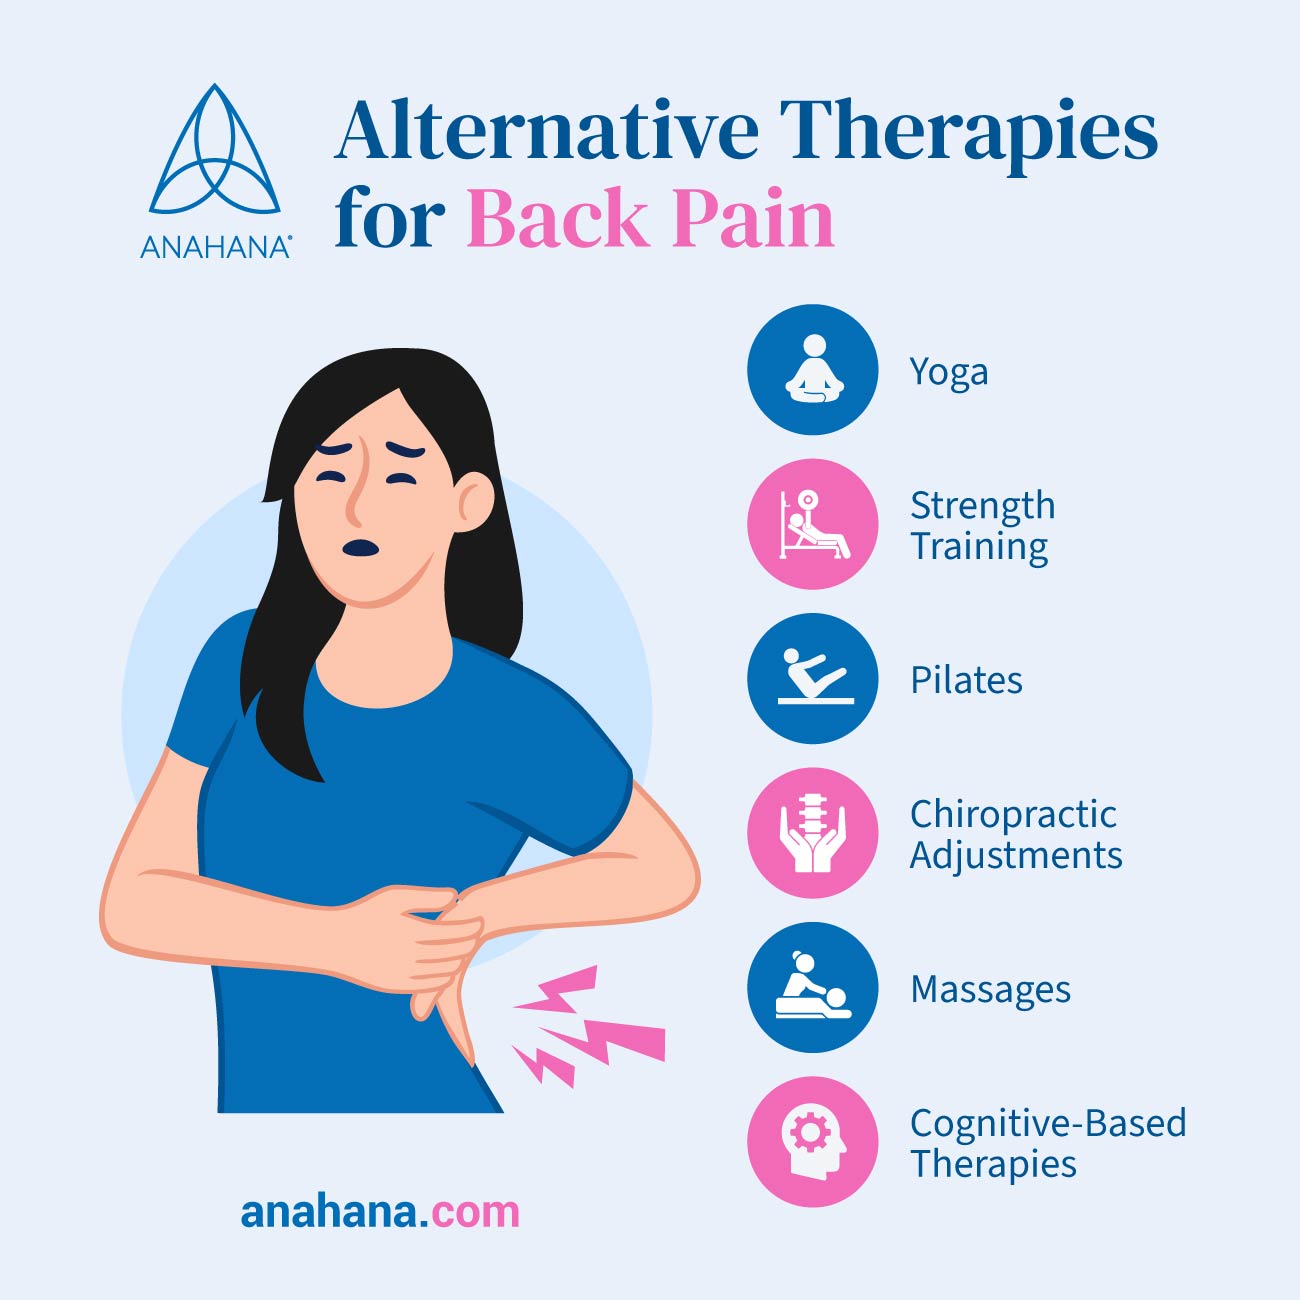 alternatív terápiák hátfájás esetén